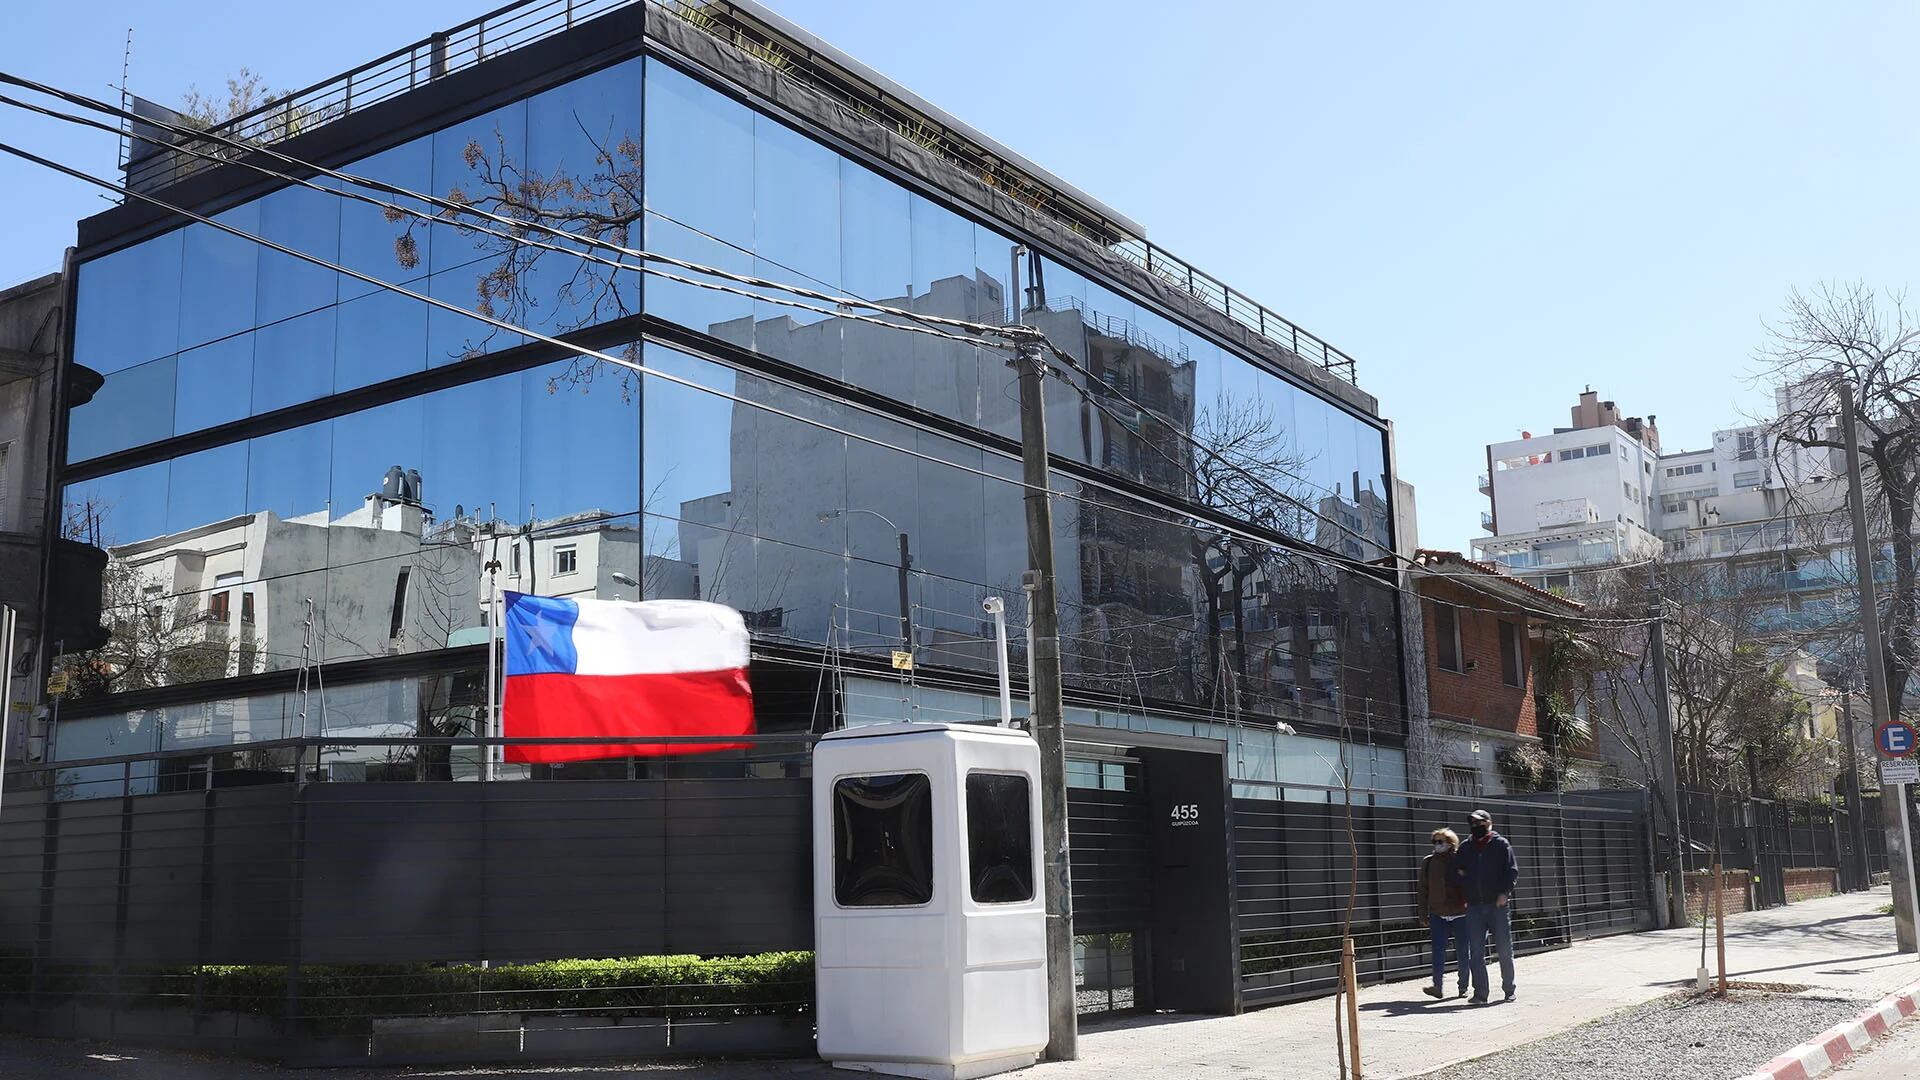 La embajada de Chile en Uruguay le alquila este edificio de casi 600 m2 al futbolista Mascherano. Está ubicado en Punta Carretas, en Montevideo. (Foto: Nicolás der Agopián/Búsqueda )